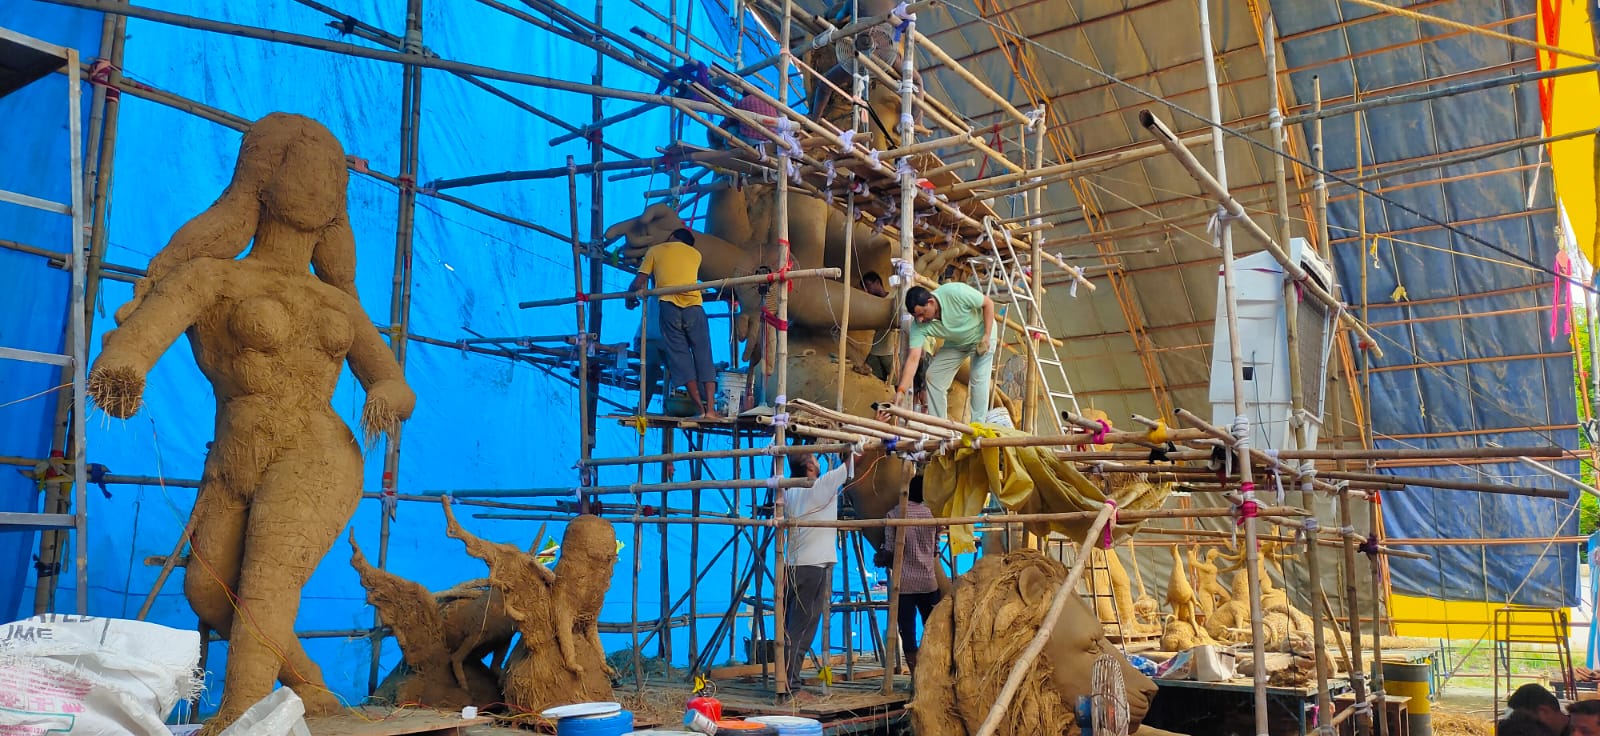 नैला दुर्गोत्सव: 110 फीट ऊंचे अक्षरधाम मंदिर में स्वर्ण कमल पर विराजेंगी मां दुर्गा